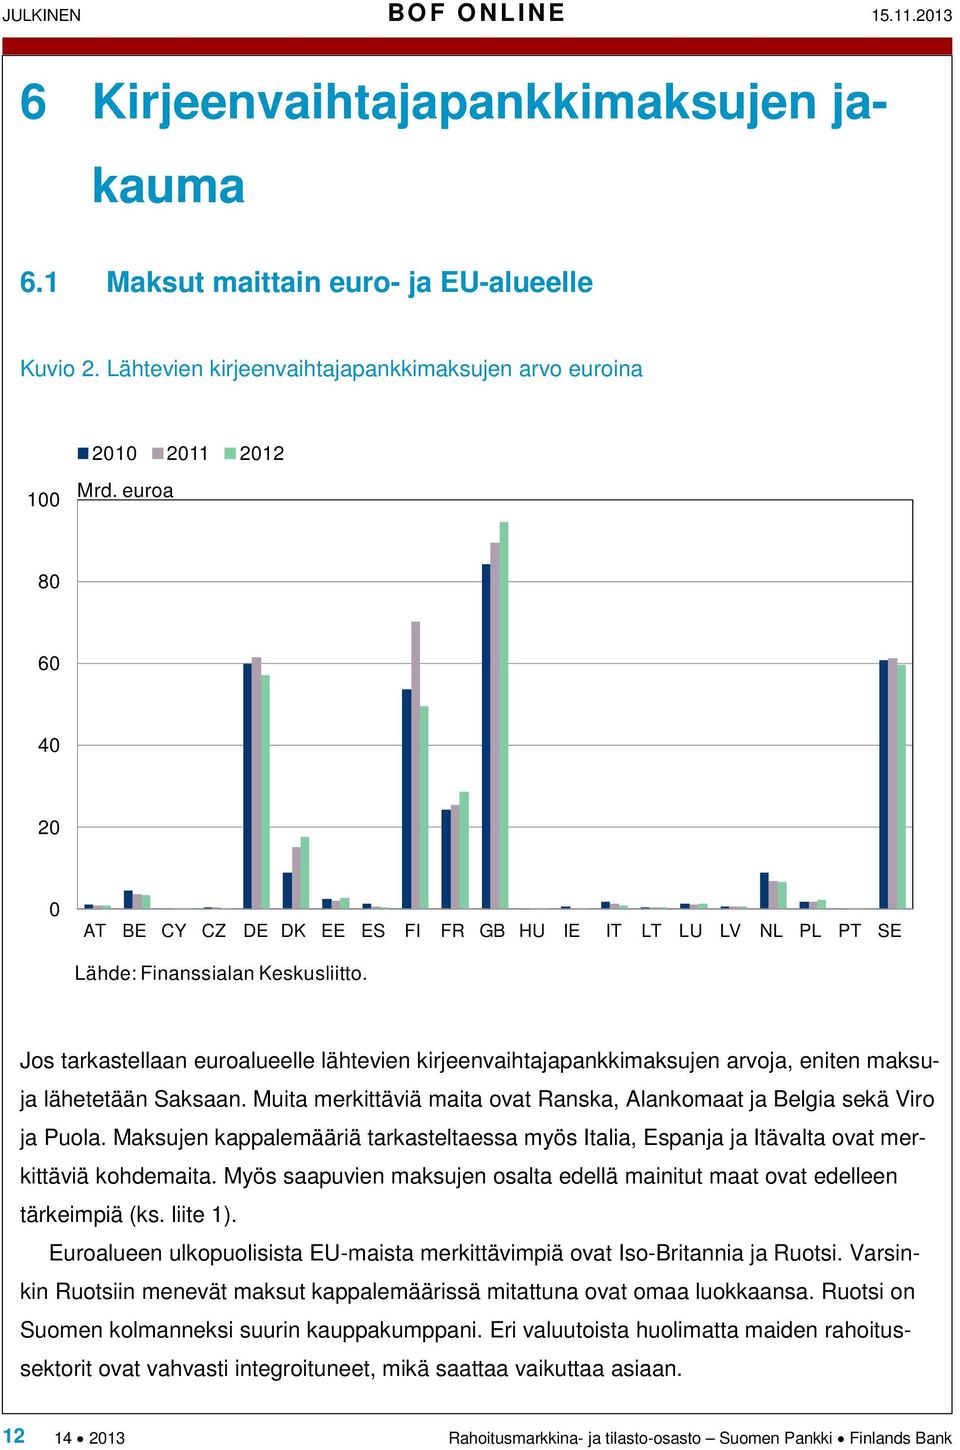 Jos tarkastellaan euroalueelle lähtevien kirjeenvaihtajapankkimaksujen arvoja, eniten maksuja lähetetään Saksaan. Muita merkittäviä maita ovat Ranska, Alankomaat ja Belgia sekä Viro ja Puola.